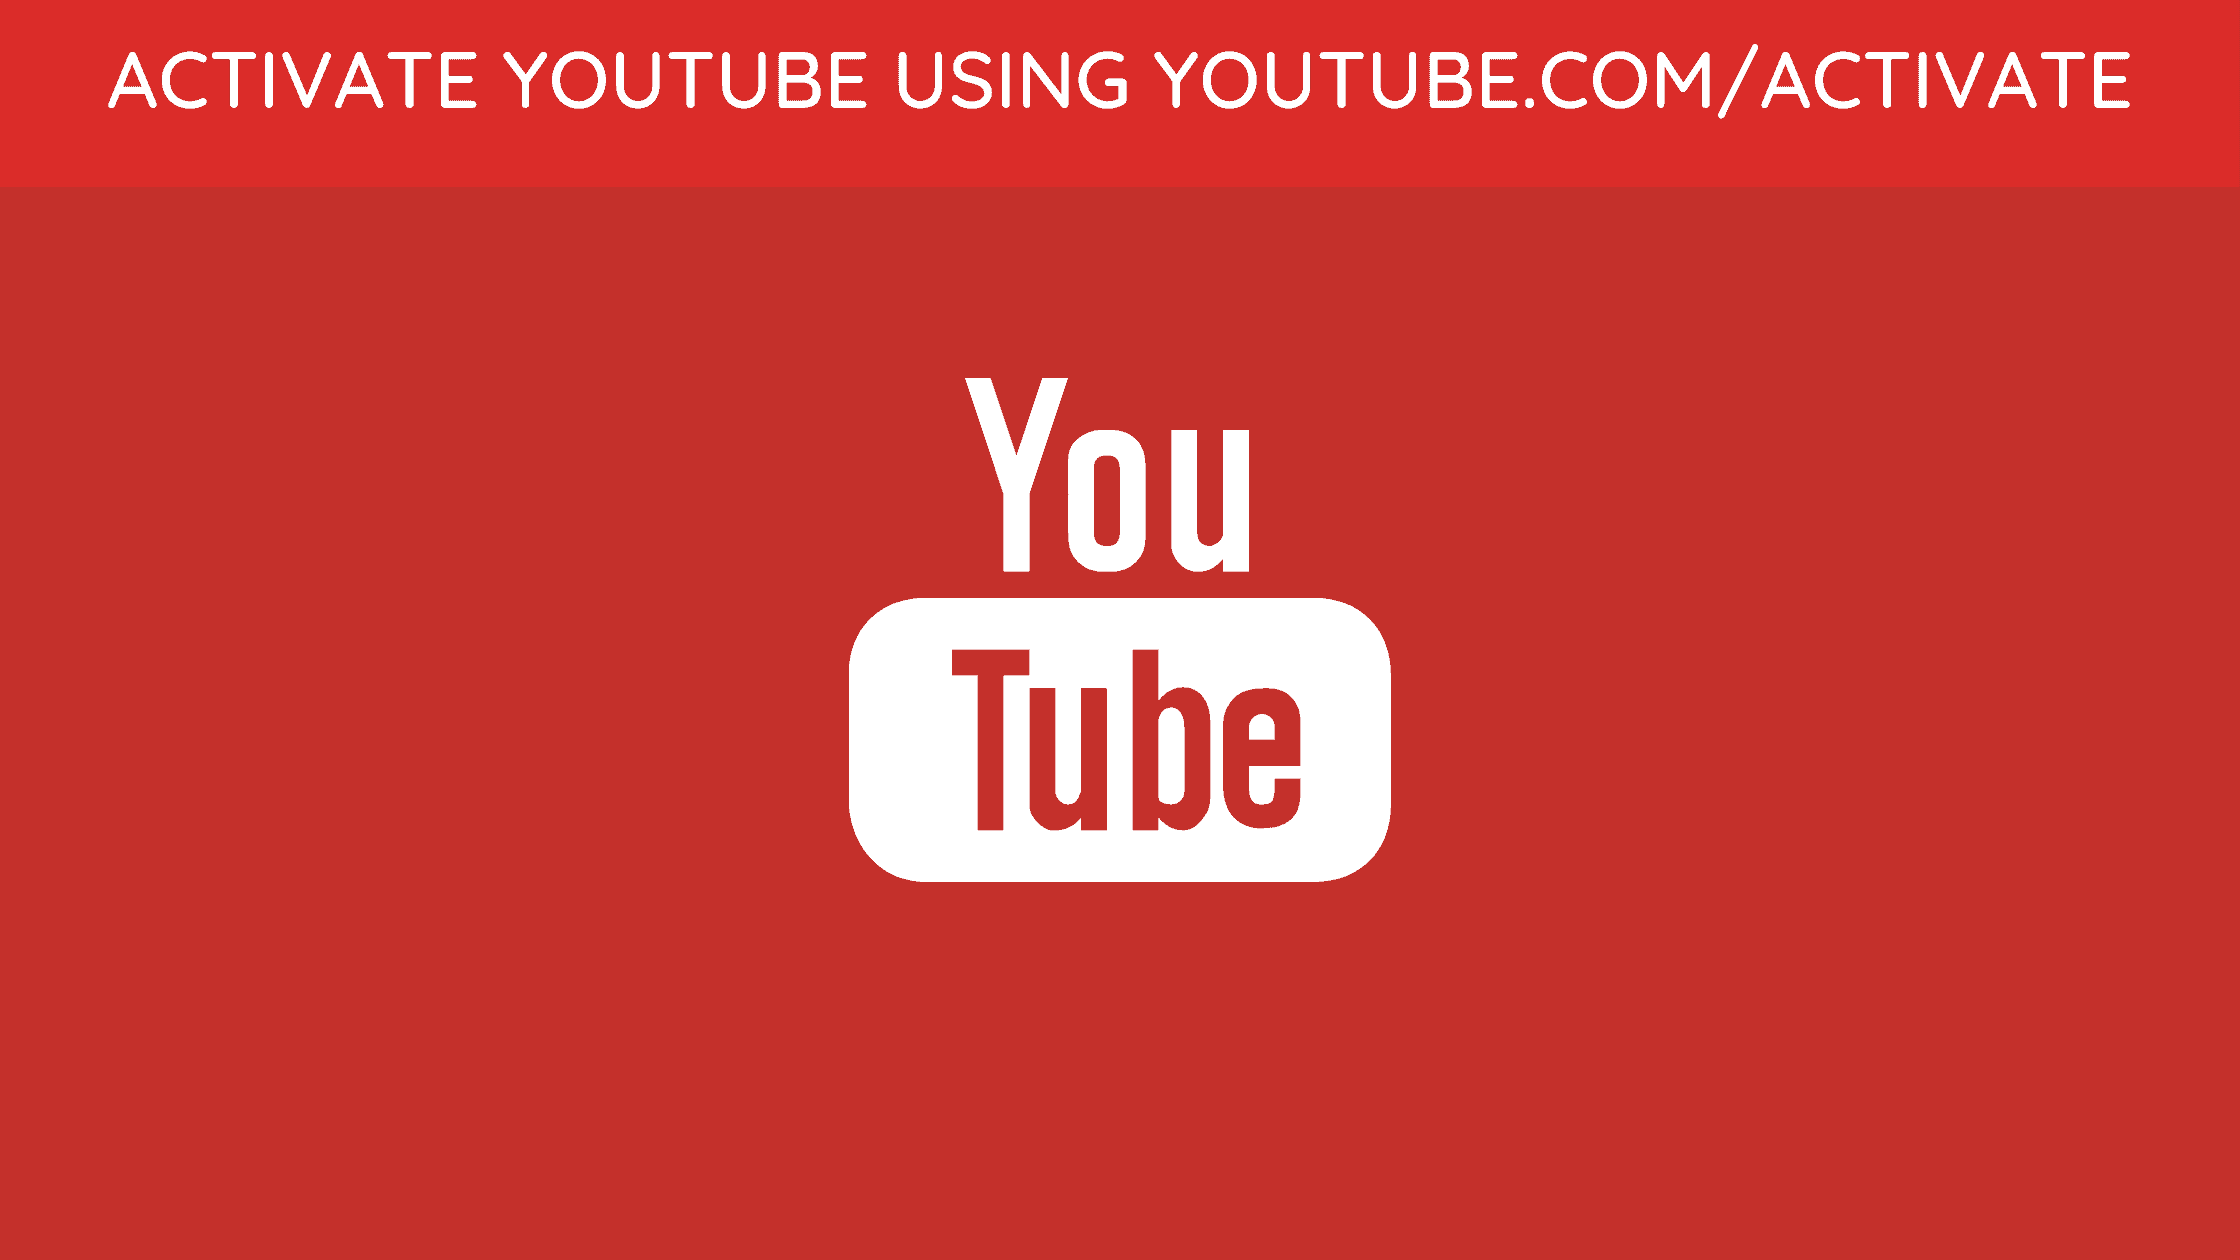 Https youtube activate ввести код. Ютуб активейт. Youtube activate. Ютуб.com activate. Youtube.com/activate youtube.com/activate.